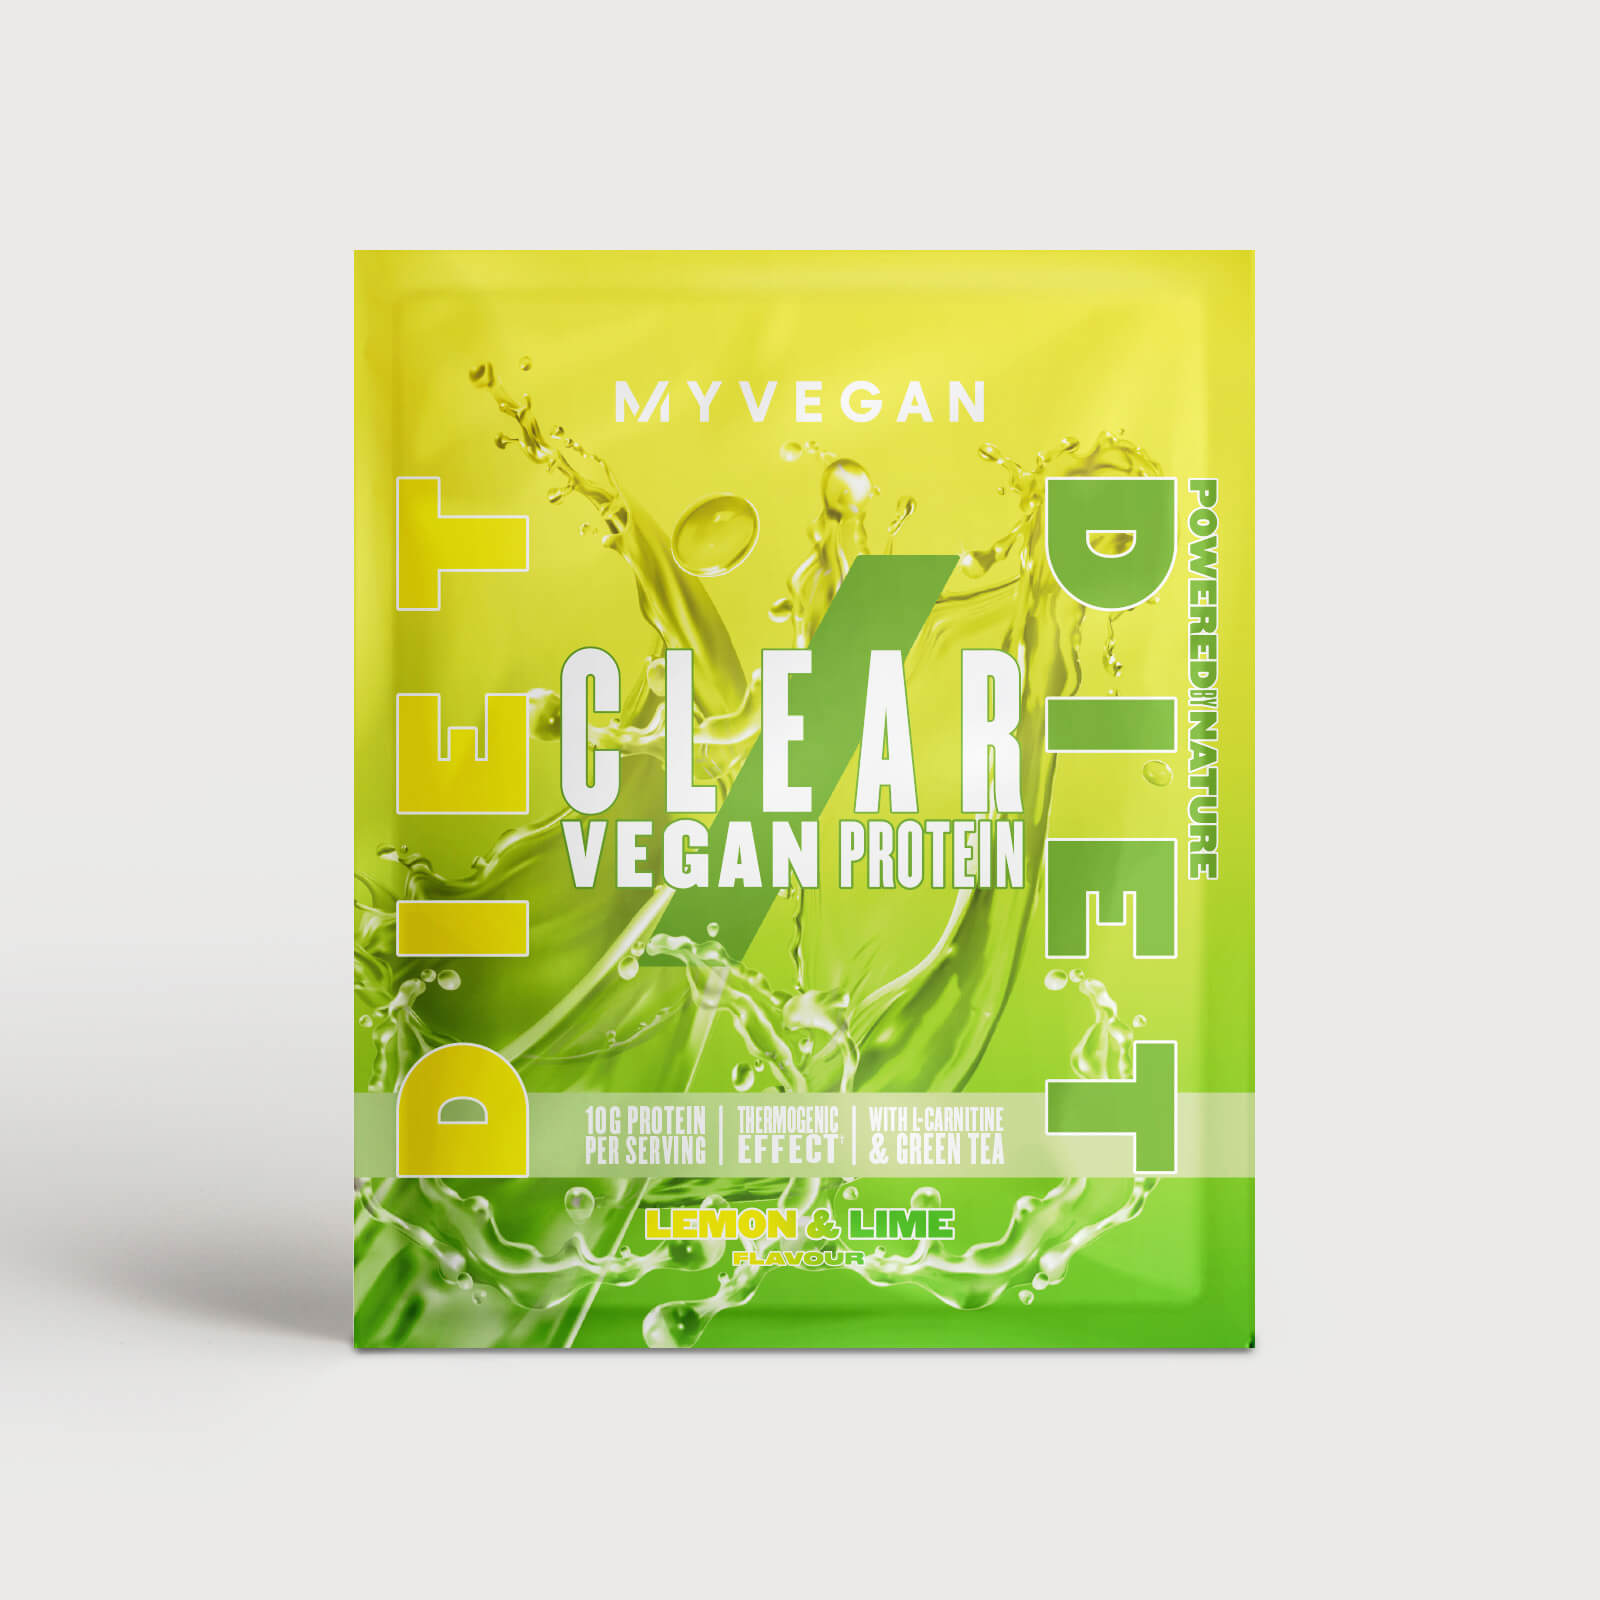 Clear Vegan Protein Diet (Sample) - 17g - Lemon & Lime